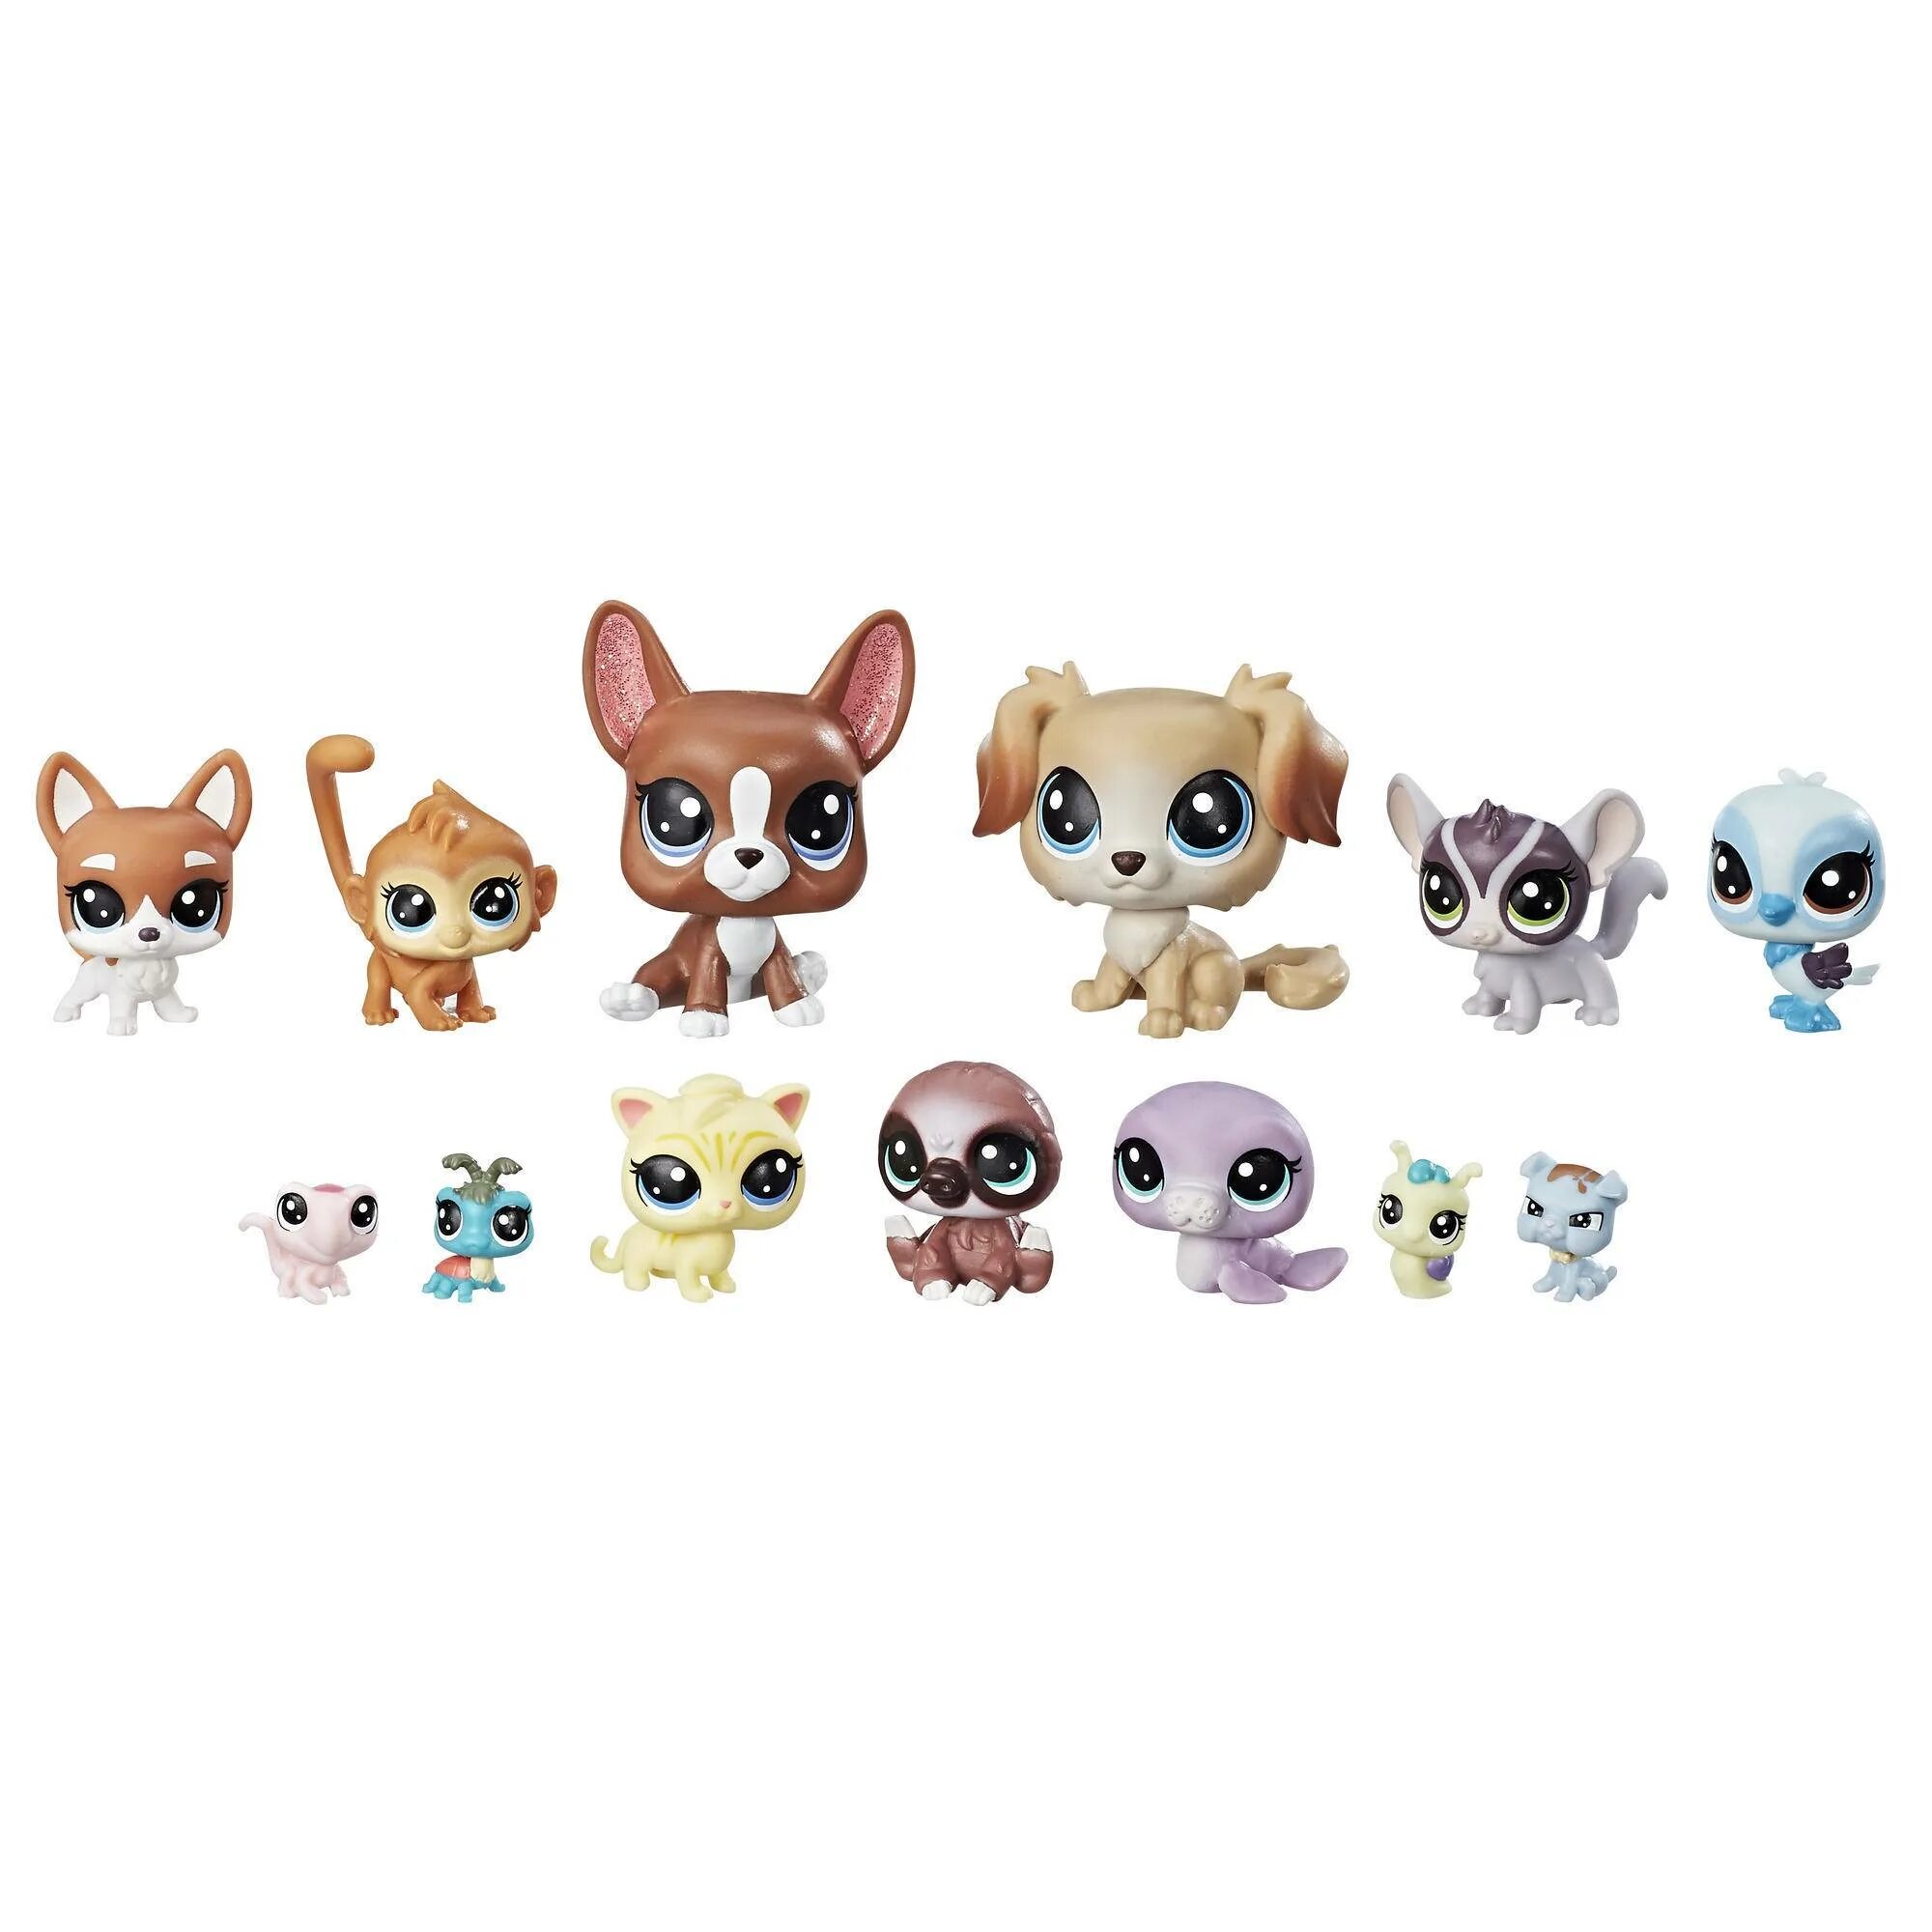 Стр пэты. Игровой набор Littlest Pet shop коллекция петов b9343. Littlest Pet shop семья петов. Littlest Pet shop Toys. Little Pet shop Рокси.